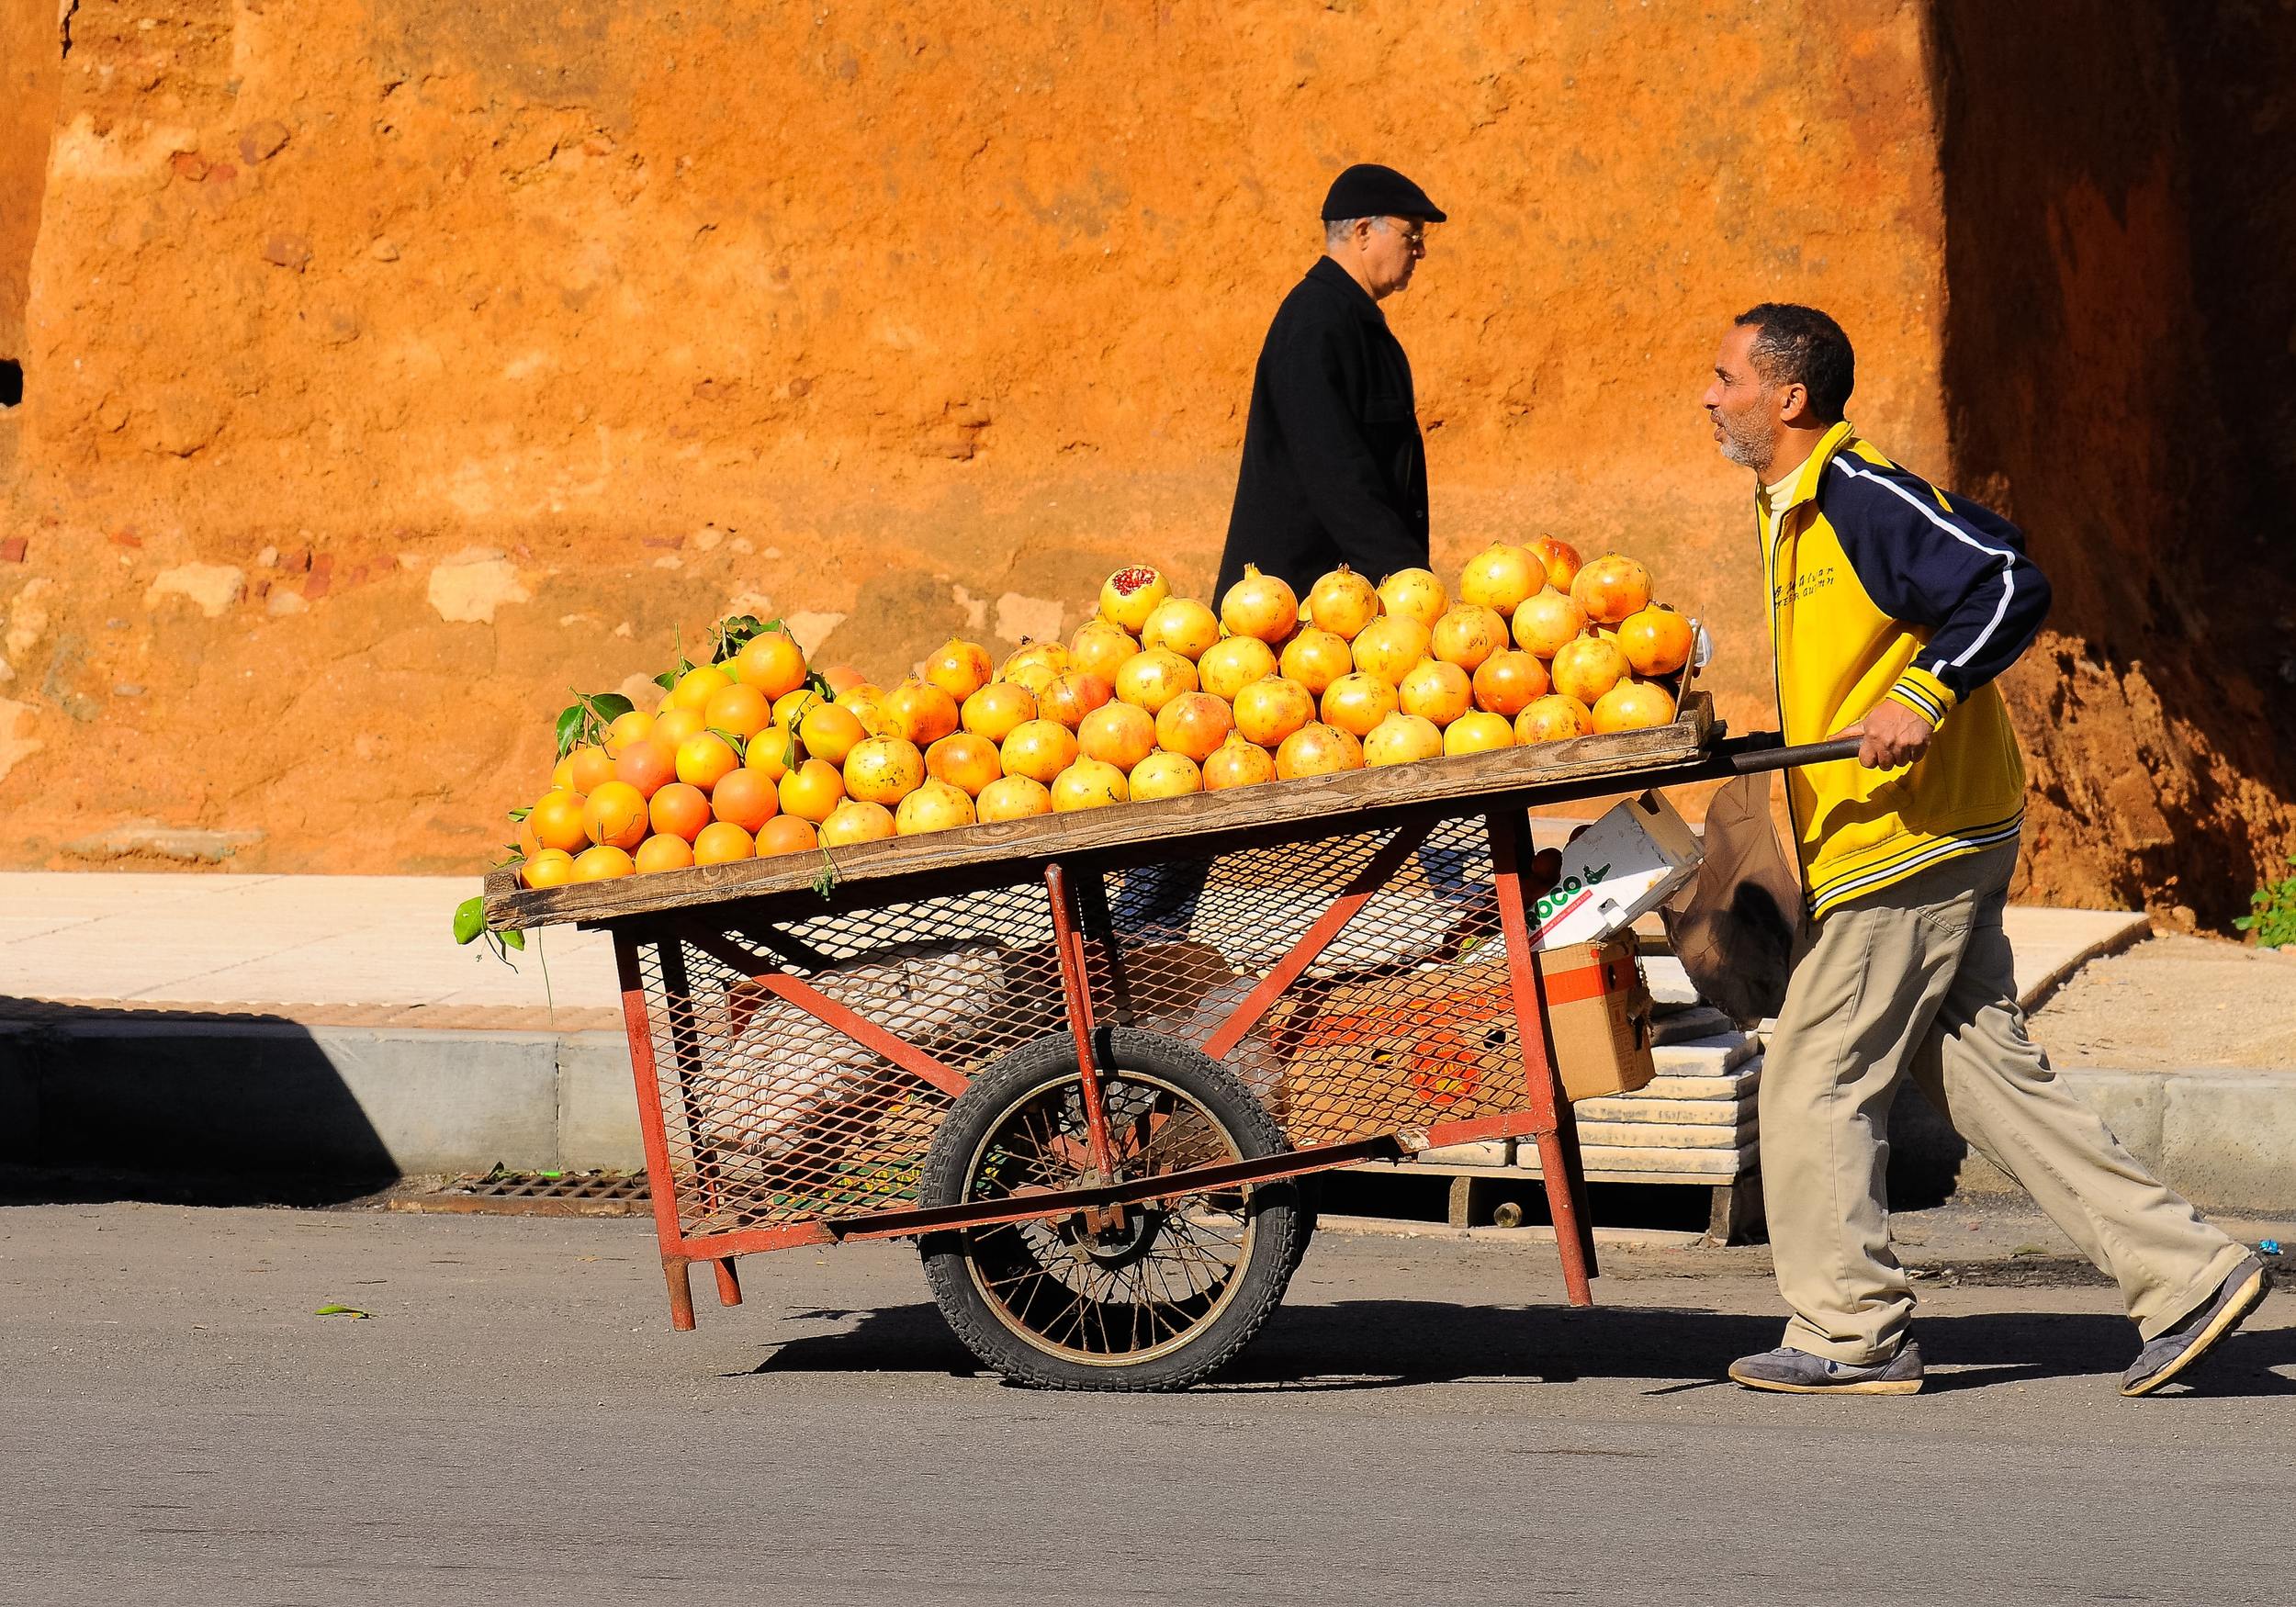 appelsiineja Casablancassa kuvaaja Eduardo C. G Unsplash